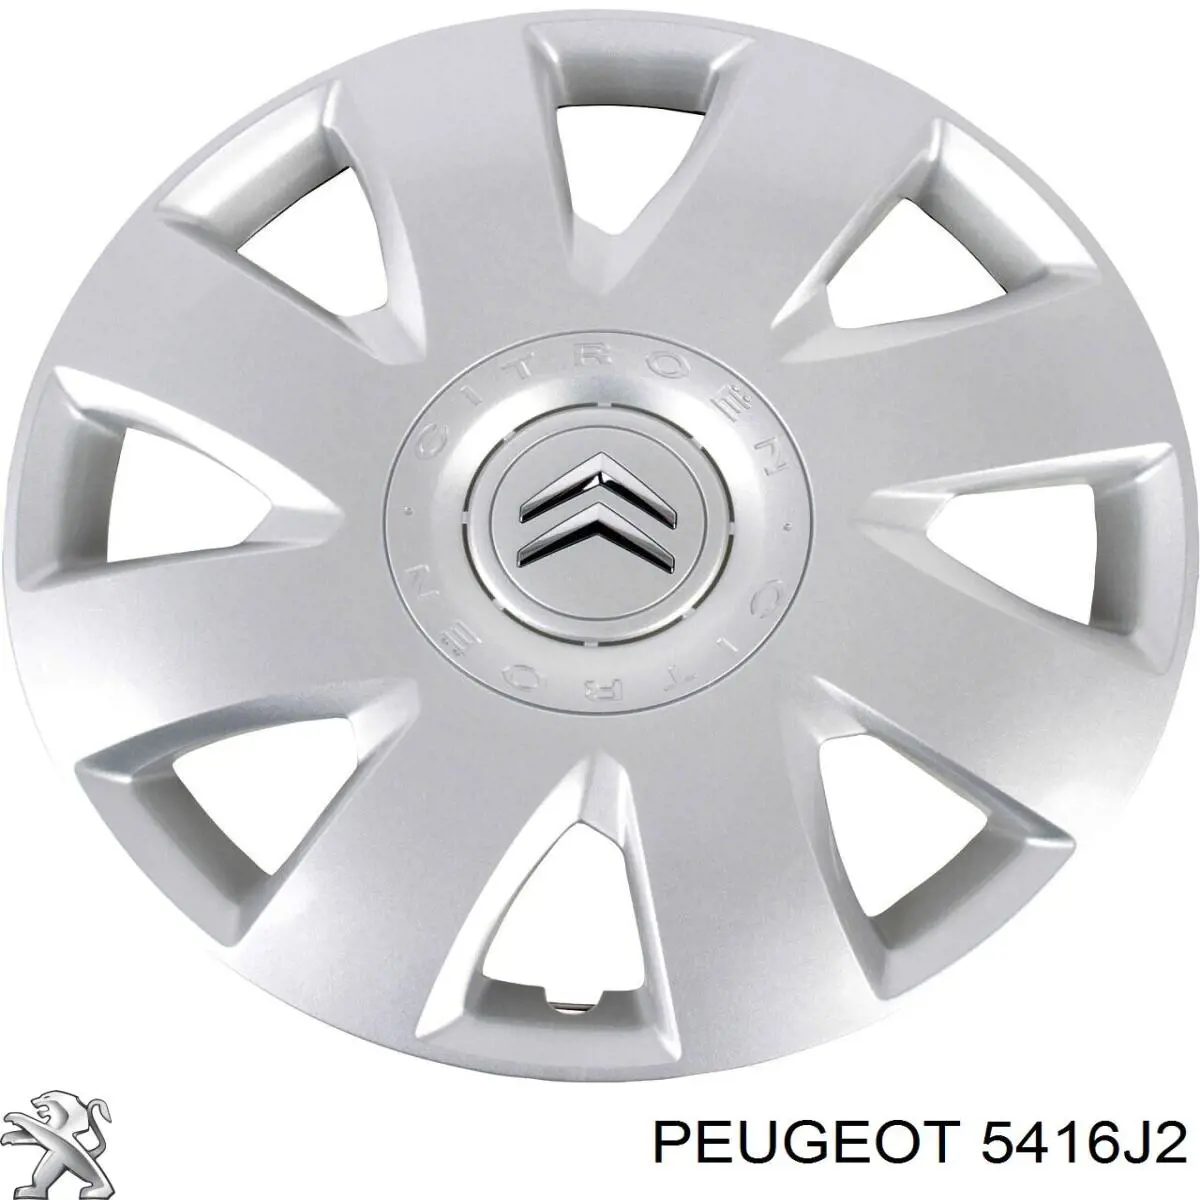 5416J2 Peugeot/Citroen tapacubos de ruedas